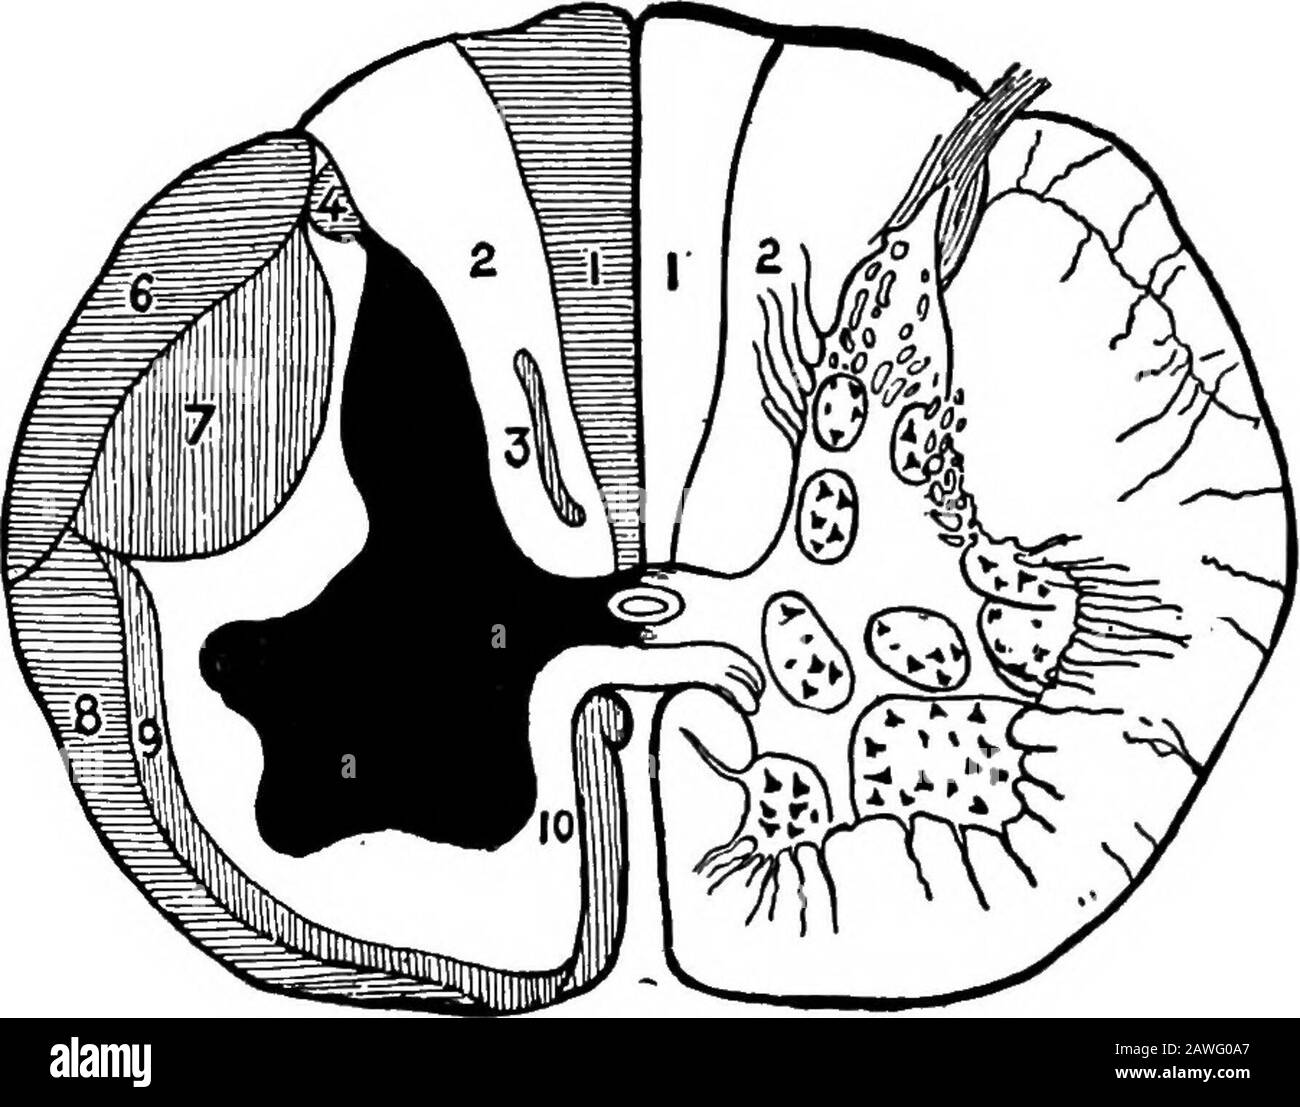 Anatomia applicata e chinesiologia, il meccanismo del movimento muscolare. Terminazioni nervose nei muscoli, Tendini e articolazioni sendmessaggi nel sistema nervoso centrale che stimolano i musclesneeded per eseguire il prossimo atto nel process.Extended studi della questione ci portano a credere che la cera-52 CONTROLLO MUSCOLARE bellum è la parte del sistema nervoso che serve come organo orcenter per il controllo di movimenti corporei complessi. La cera-bellum è strettamente collegata da fibre nervose con i semicircolarcani nel cranio, che servono come organo di equilibrio, Addit riceve anche molti n Foto Stock